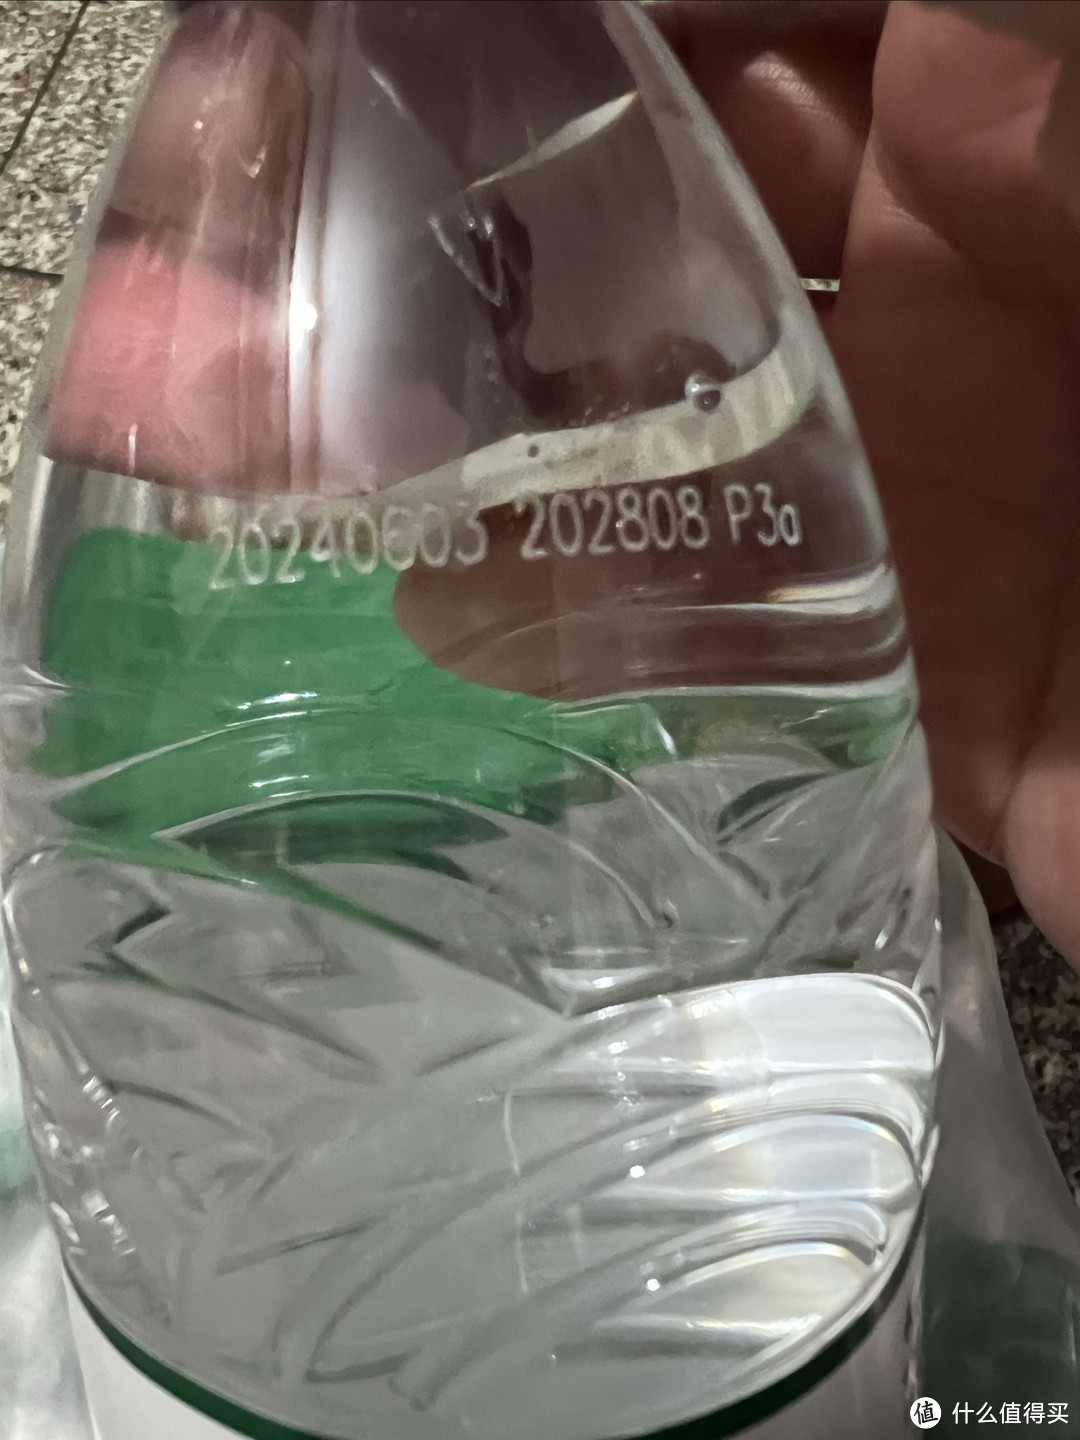 1.9元的12瓶农夫山泉饮用纯净水，你会买吗？